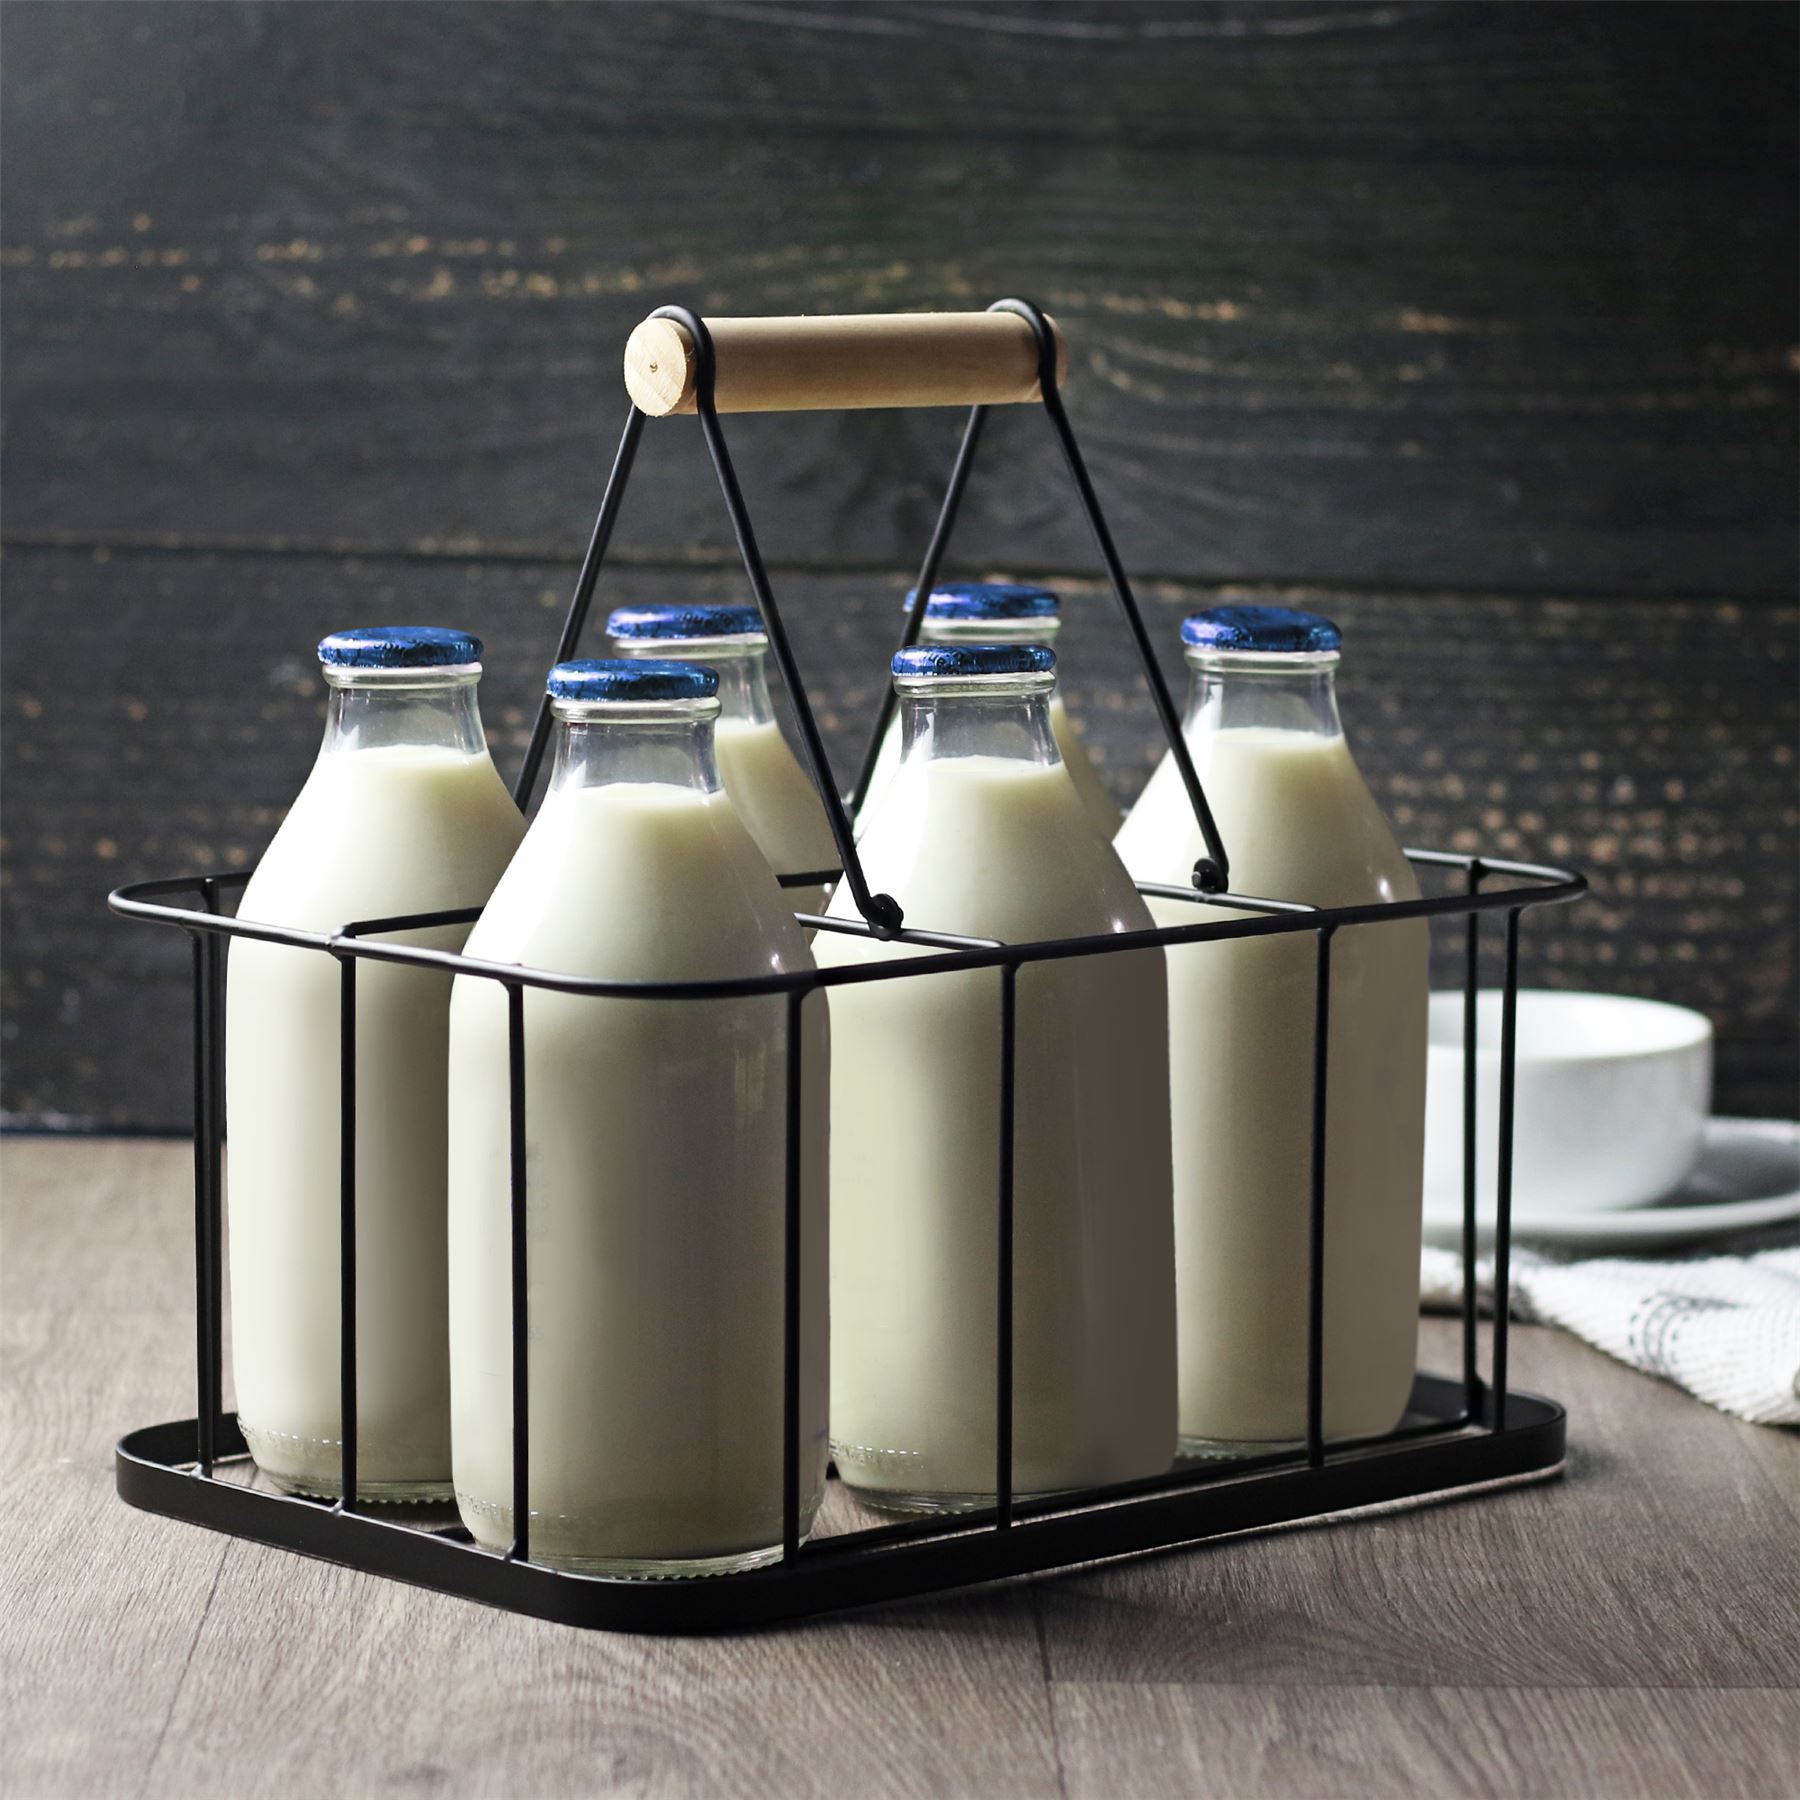 6 Milk Bottle Crate / Holder | M&W